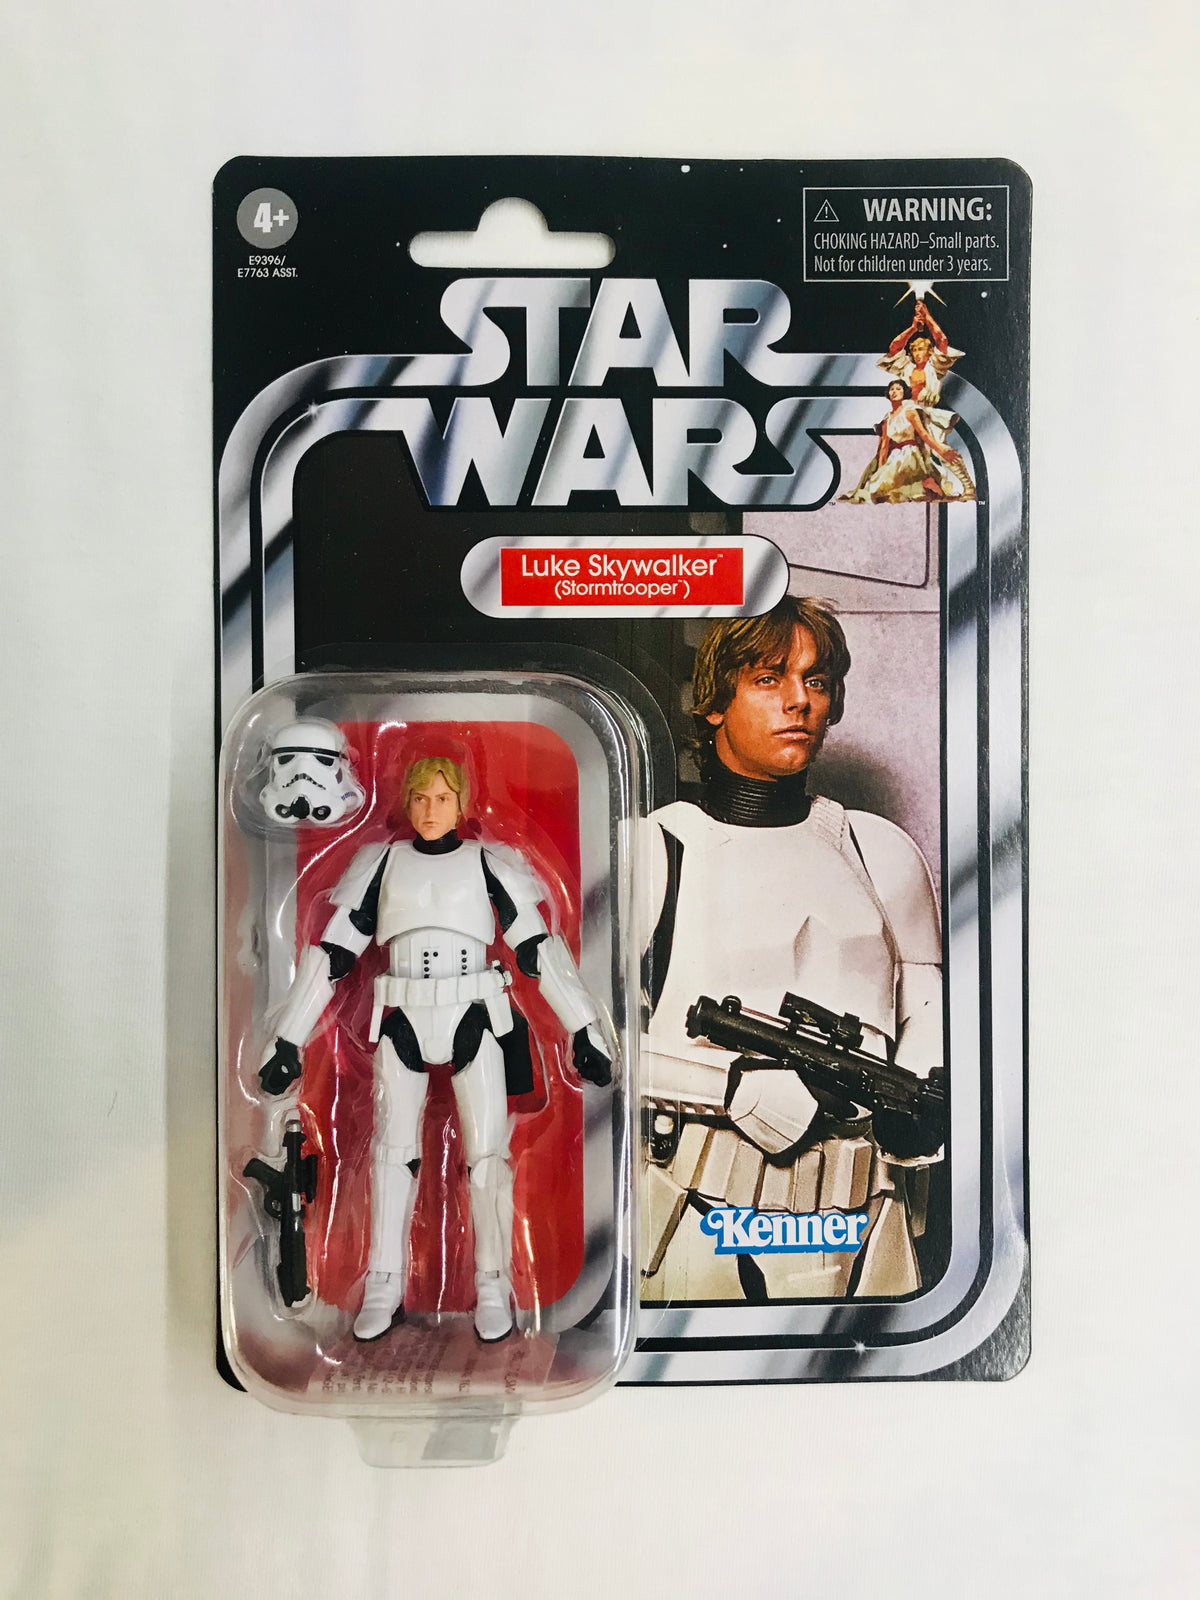 Luke Skywalker (Stormtrooper) (VC 169)